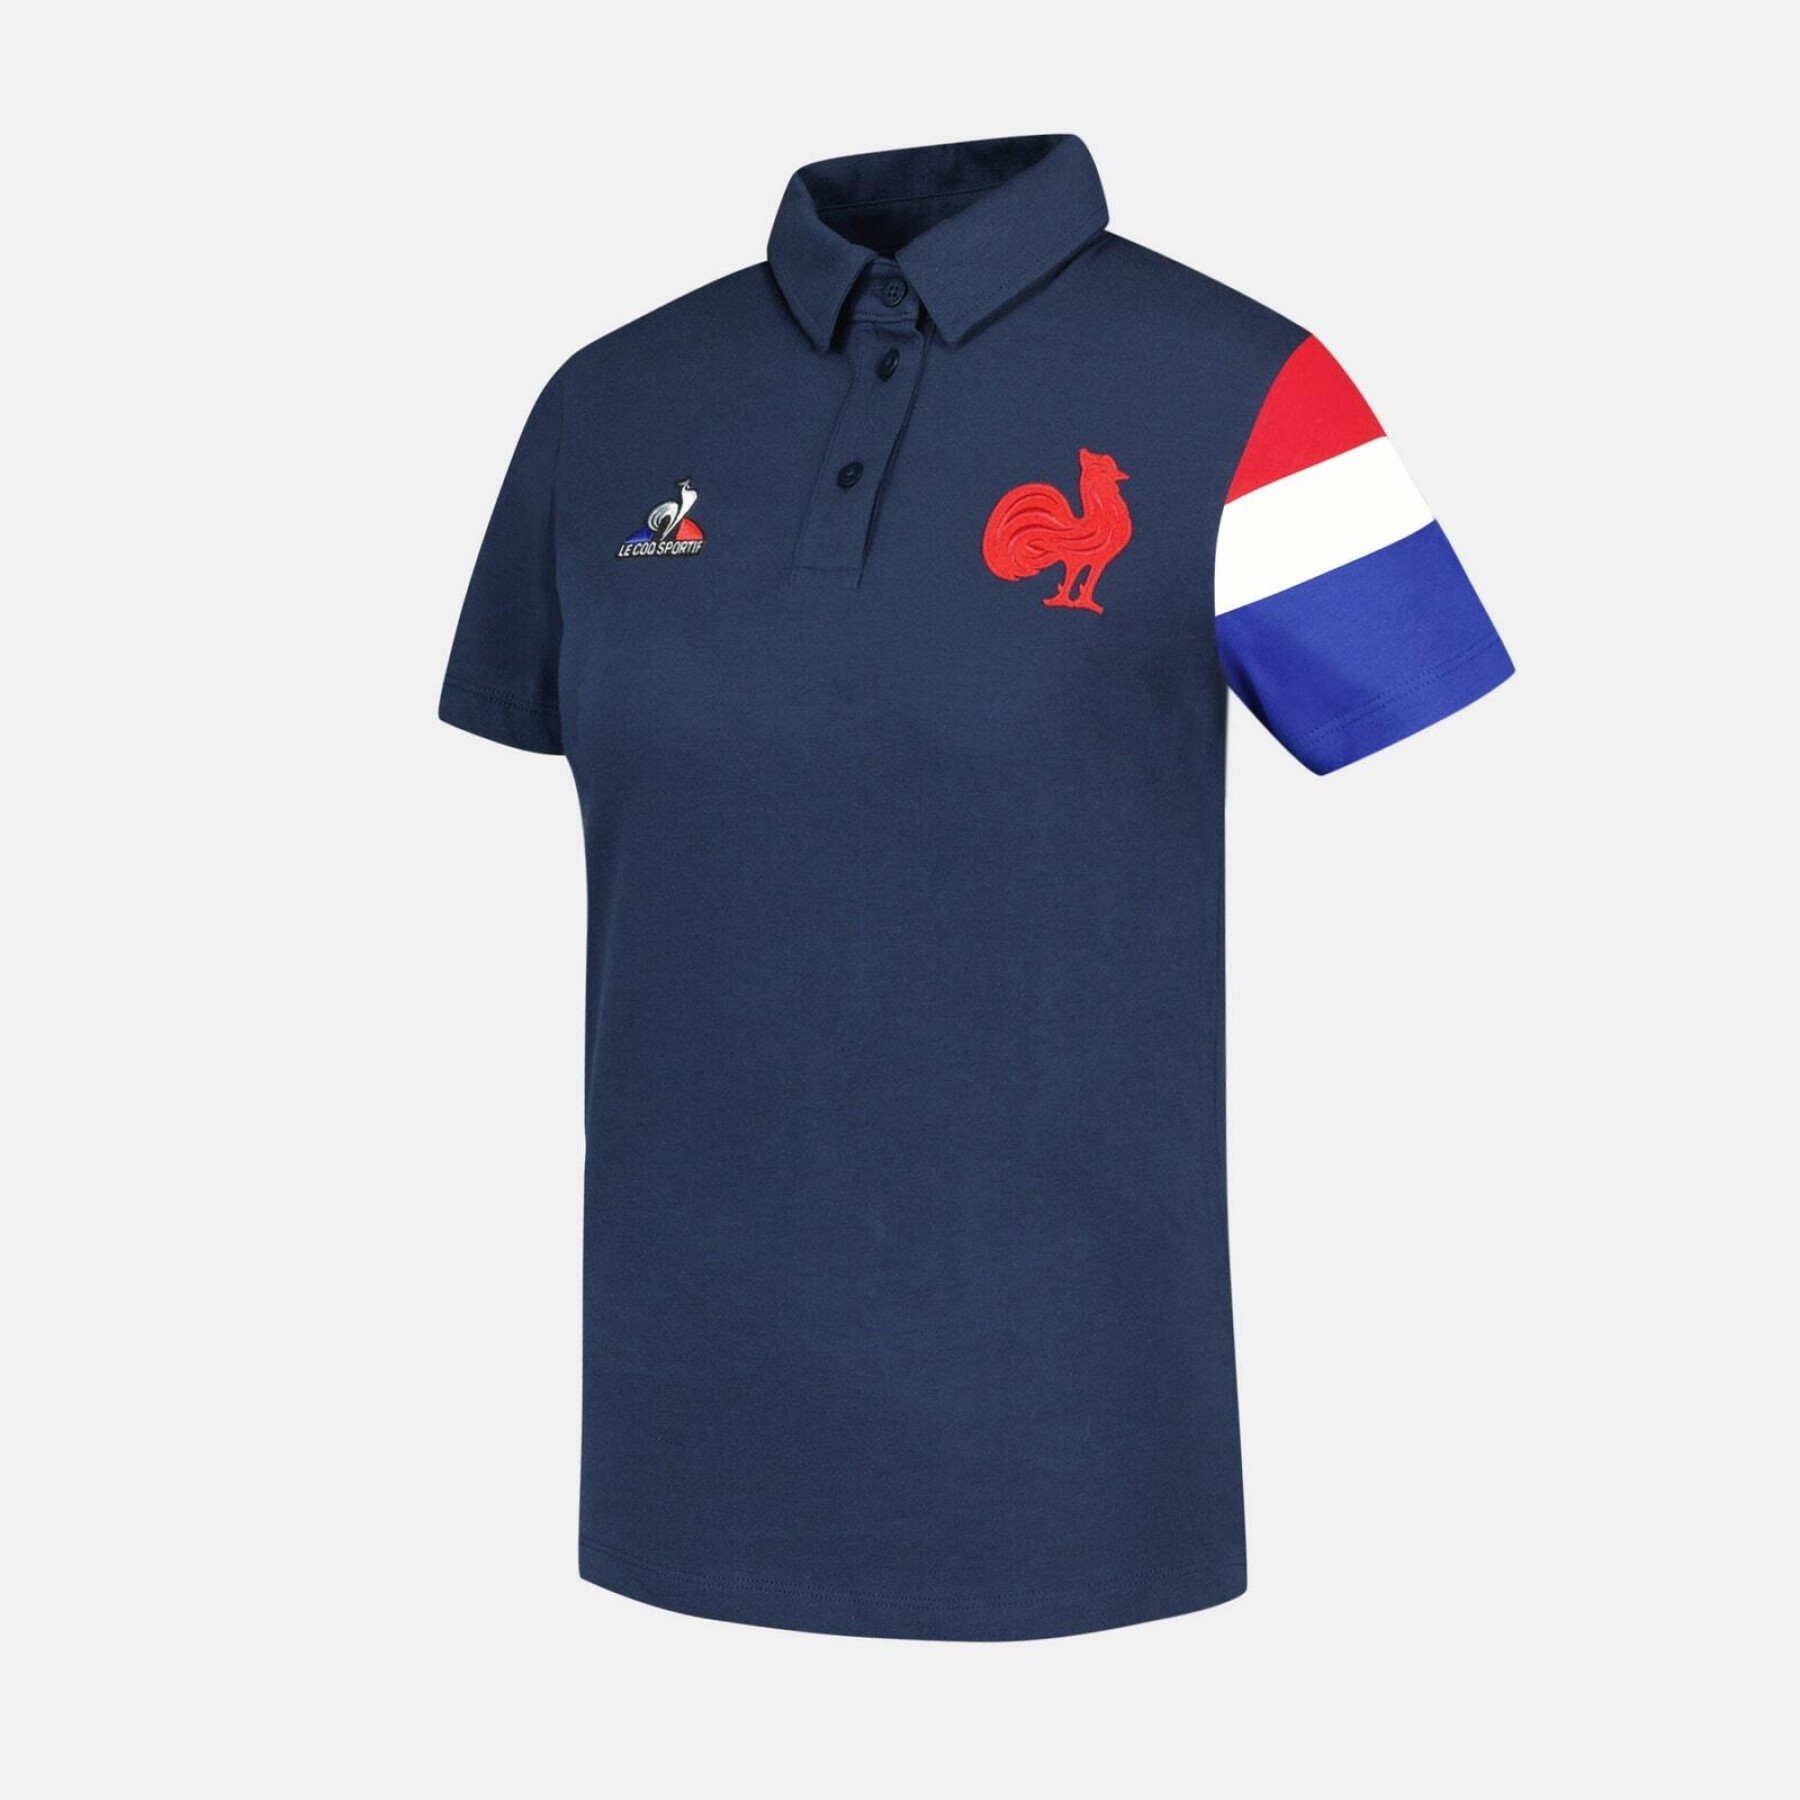 Women's polo shirt XV de France Presentation